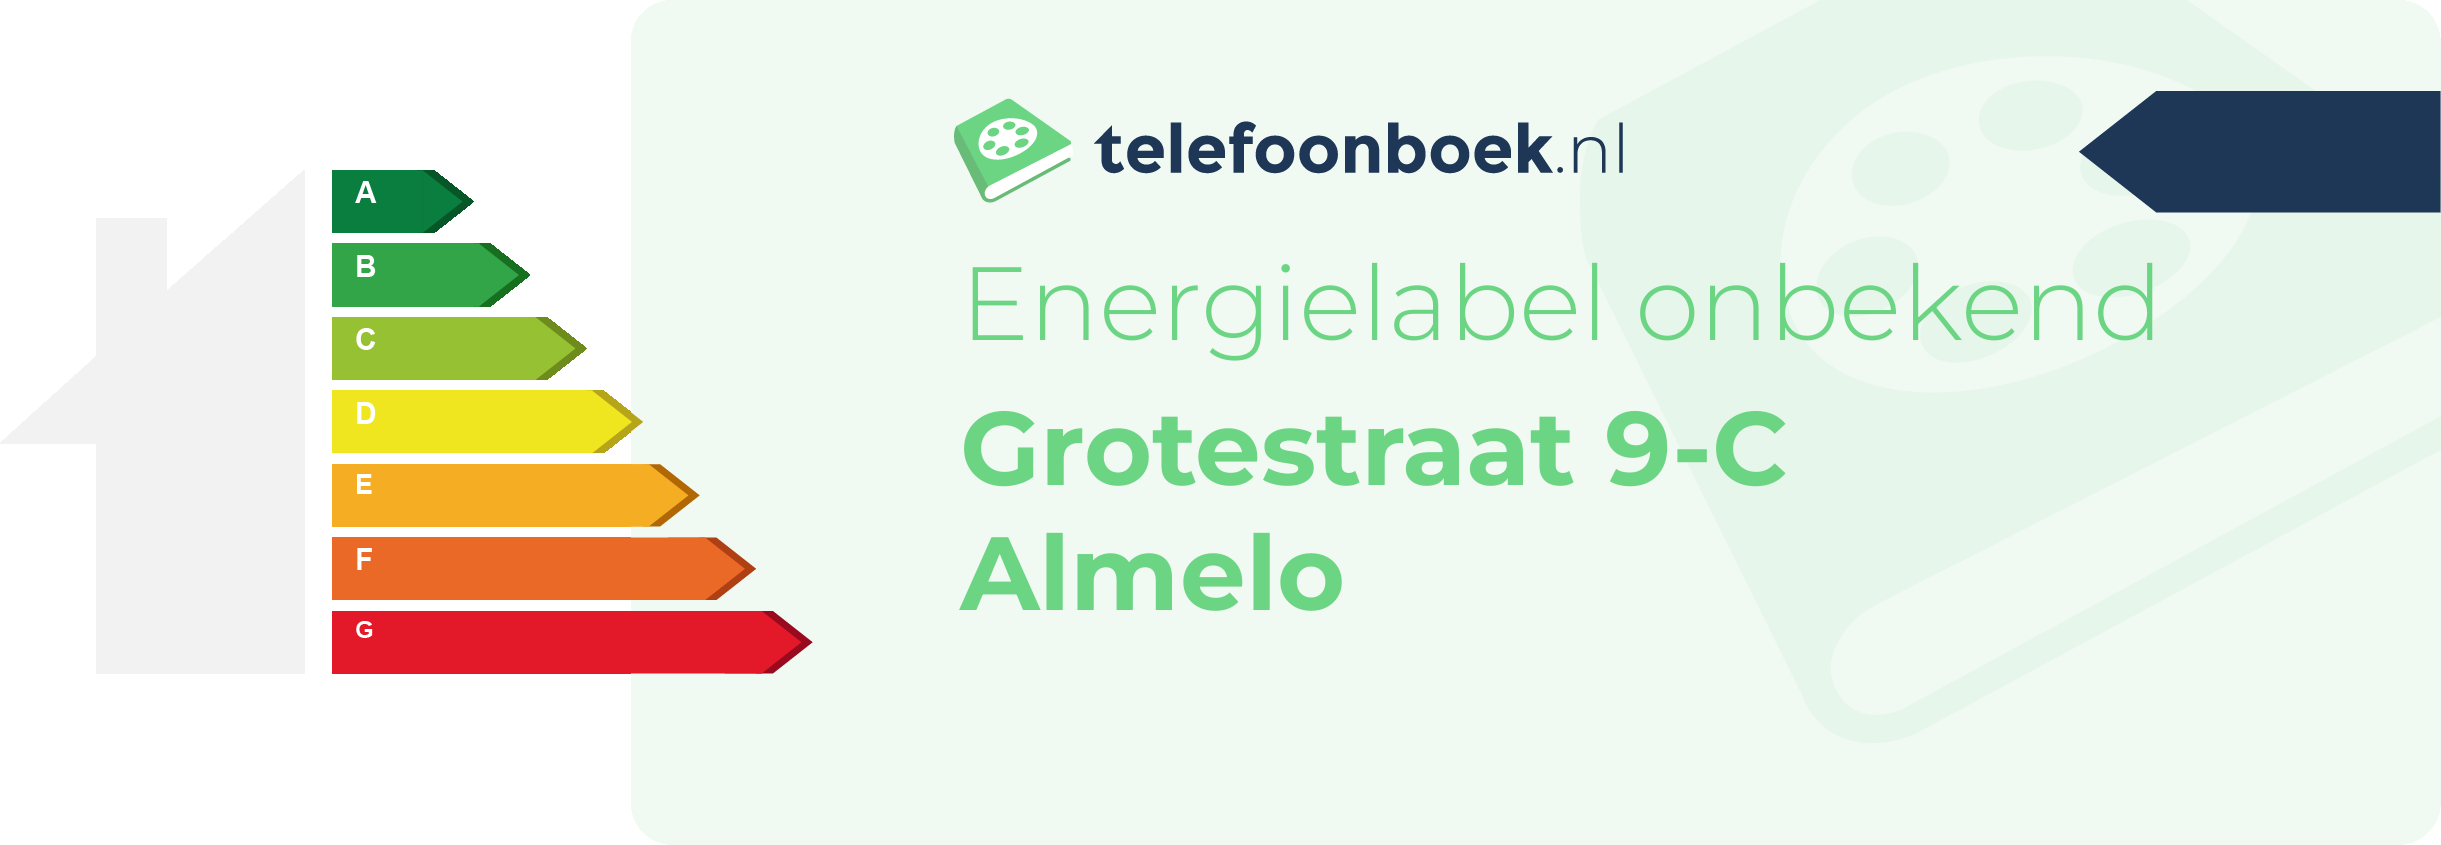 Energielabel Grotestraat 9-C Almelo